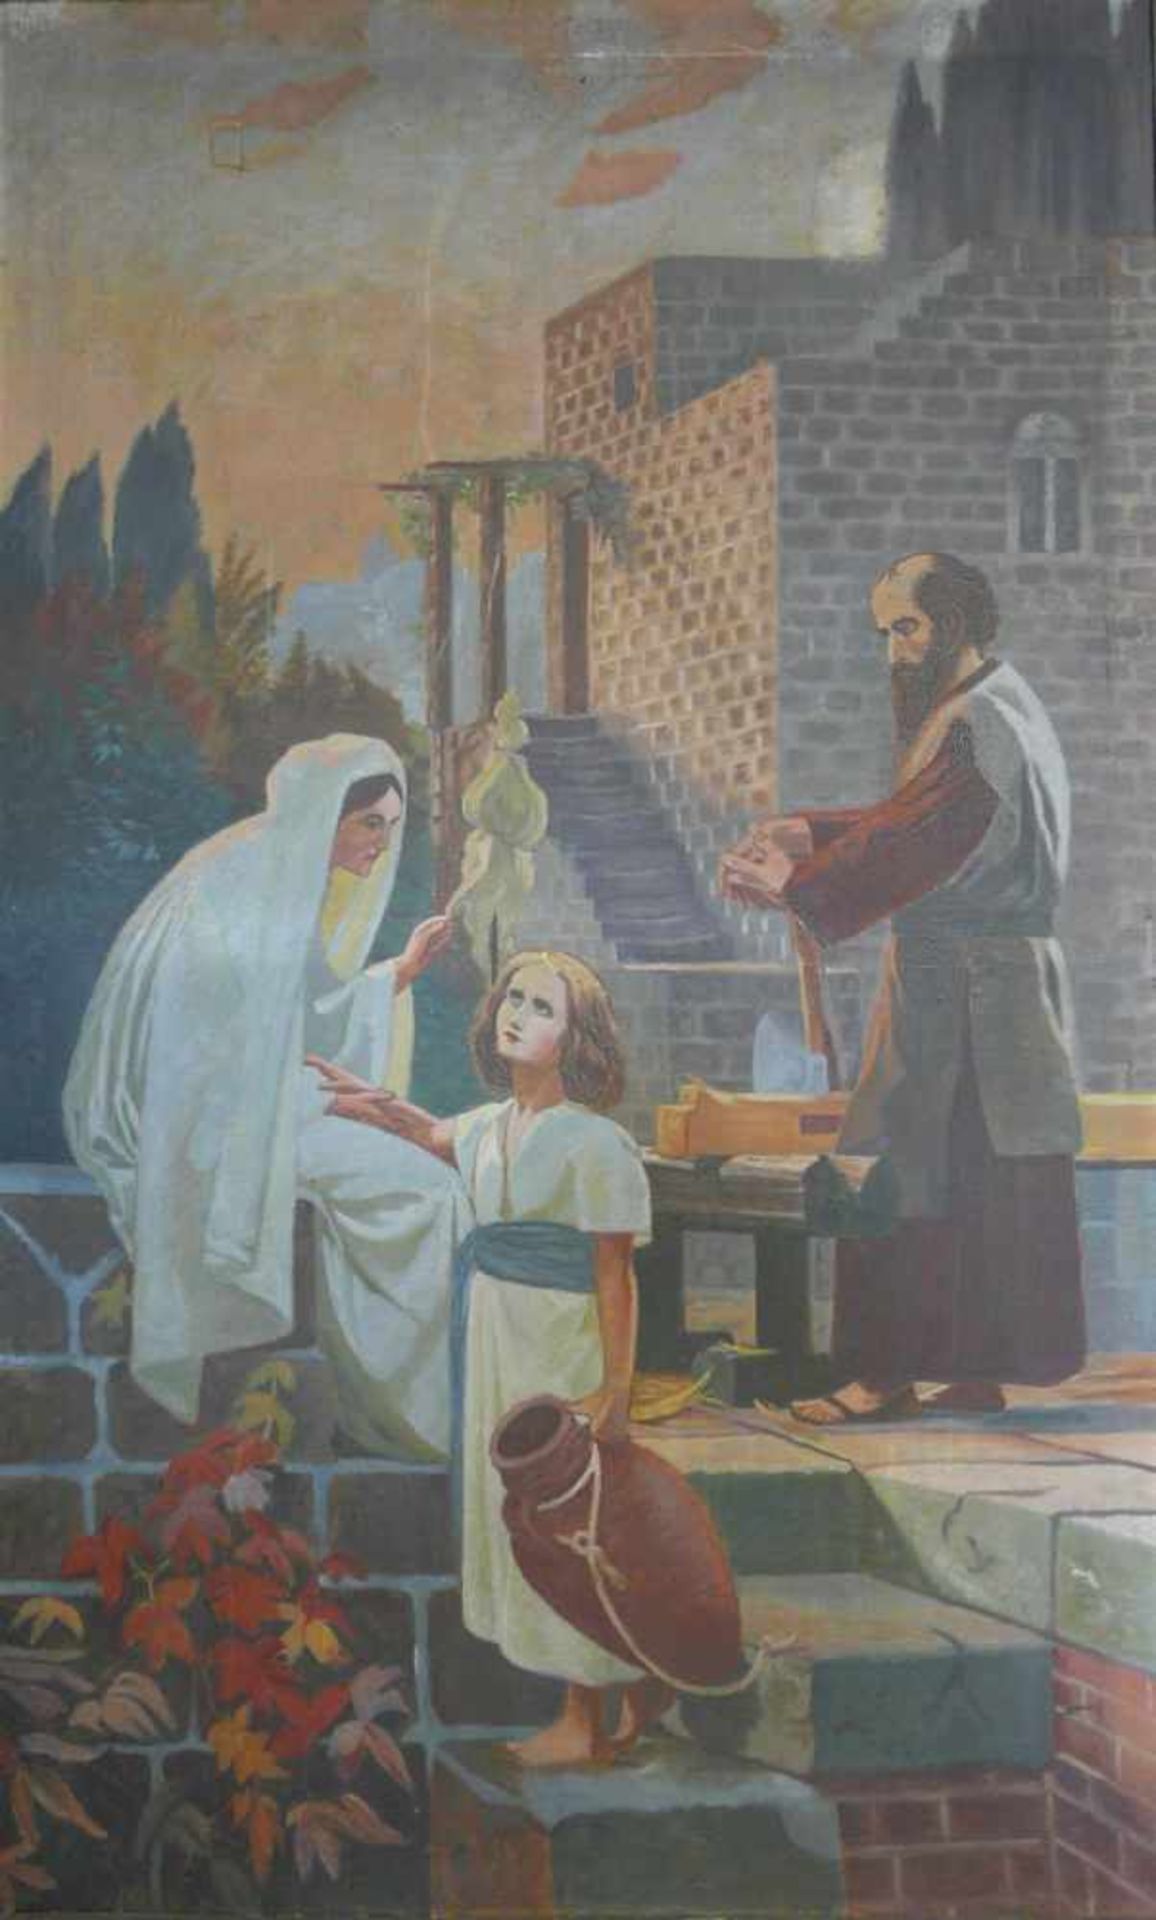 Die Heilige FamilieWohl Nazarener.Motiv: Darstellung der Heiligen Familie, an einer Treppe vor einer